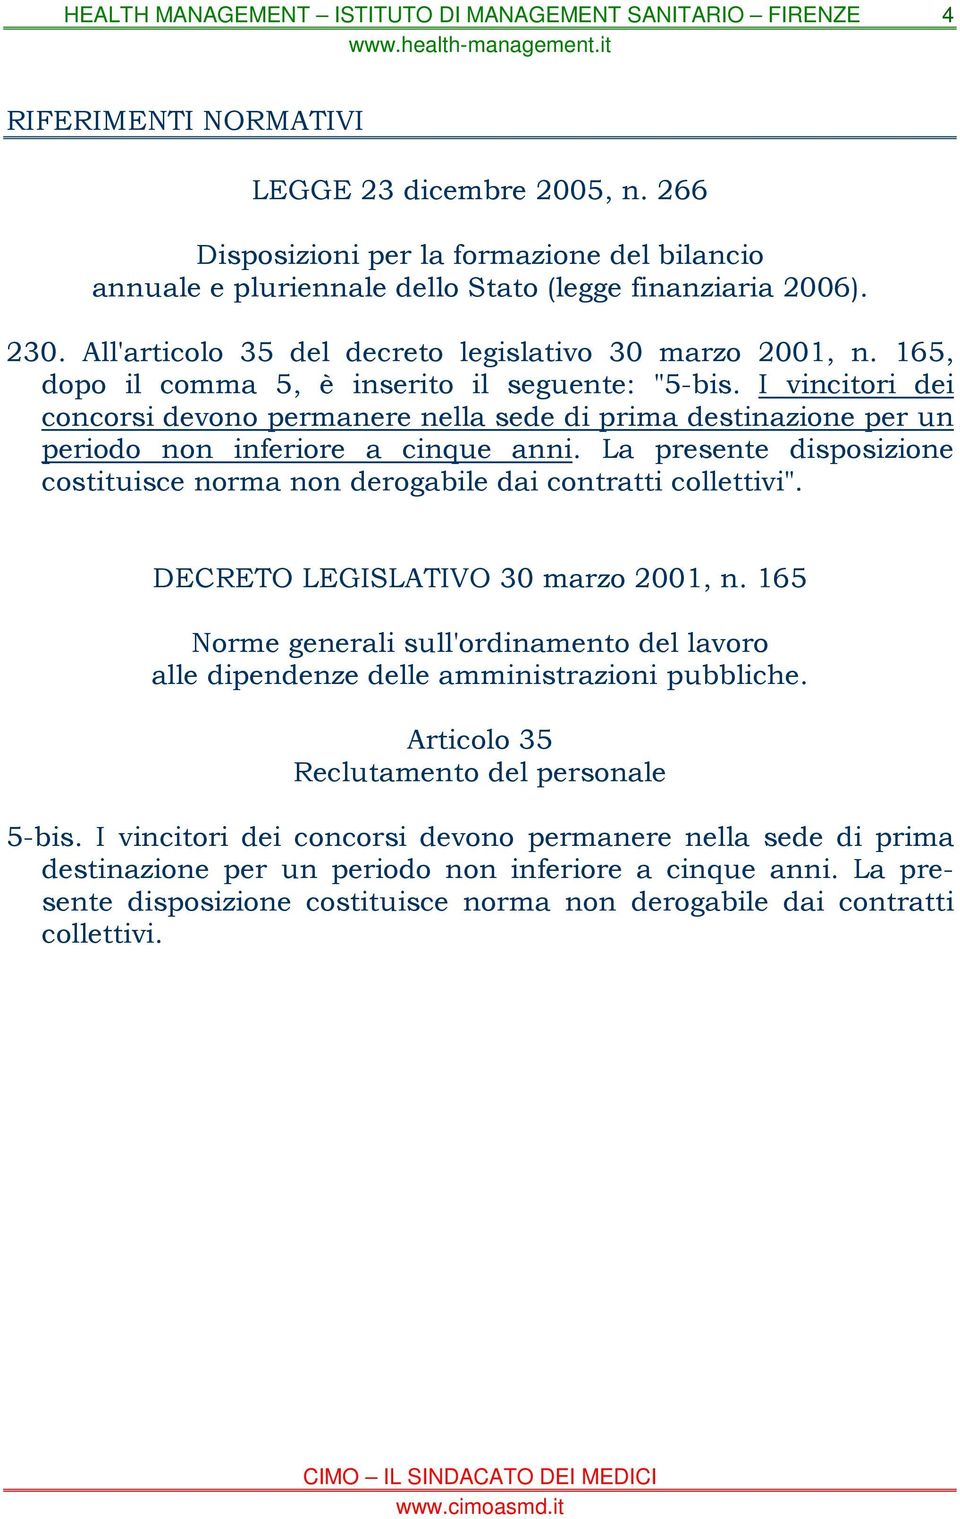 La presente disposizione costituisce norma non derogabile dai contratti collettivi". DECRETO LEGISLATIVO 30 marzo 2001, n.